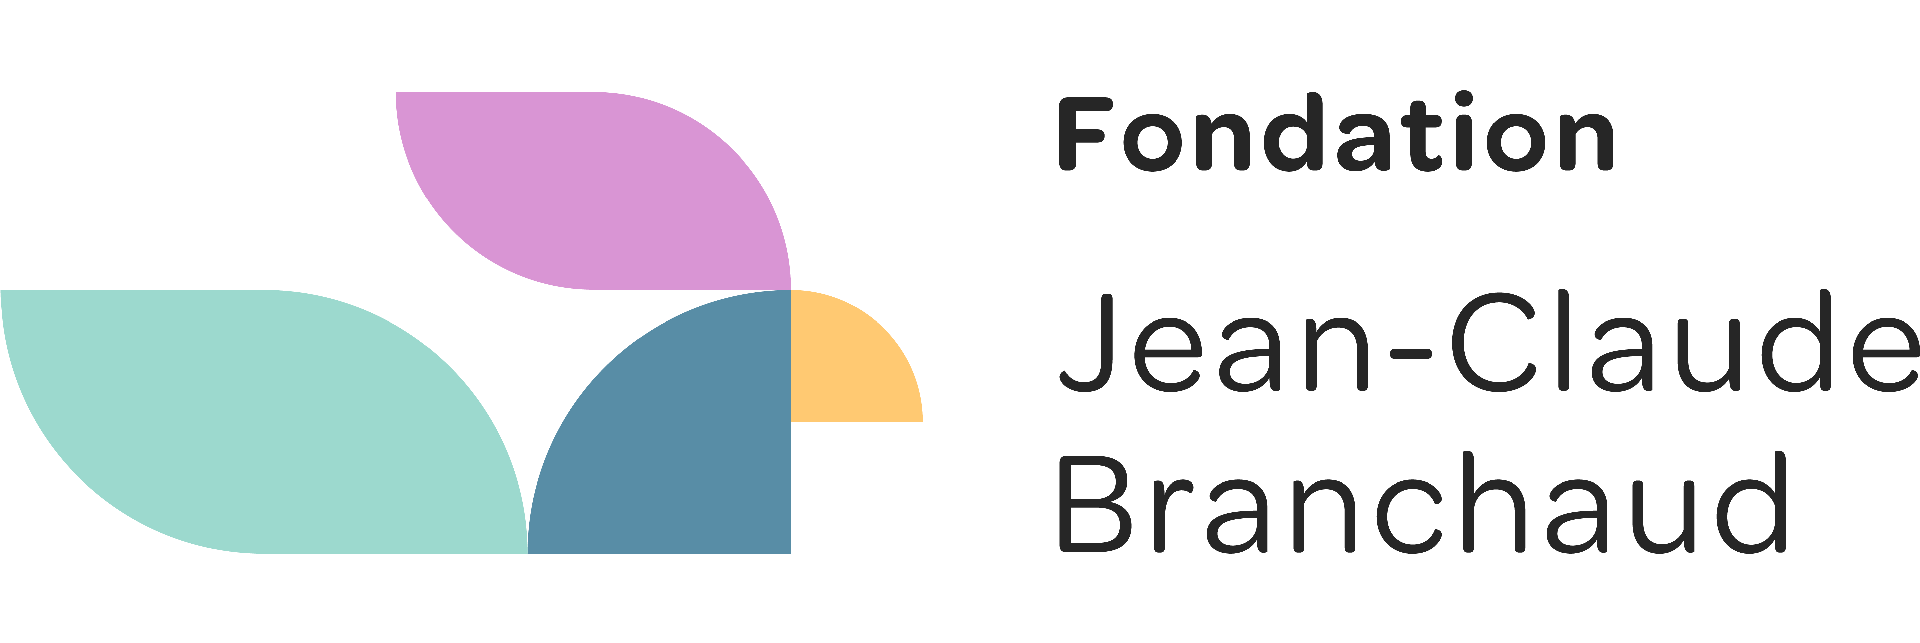 Fondation Jean-Claude Branchaud